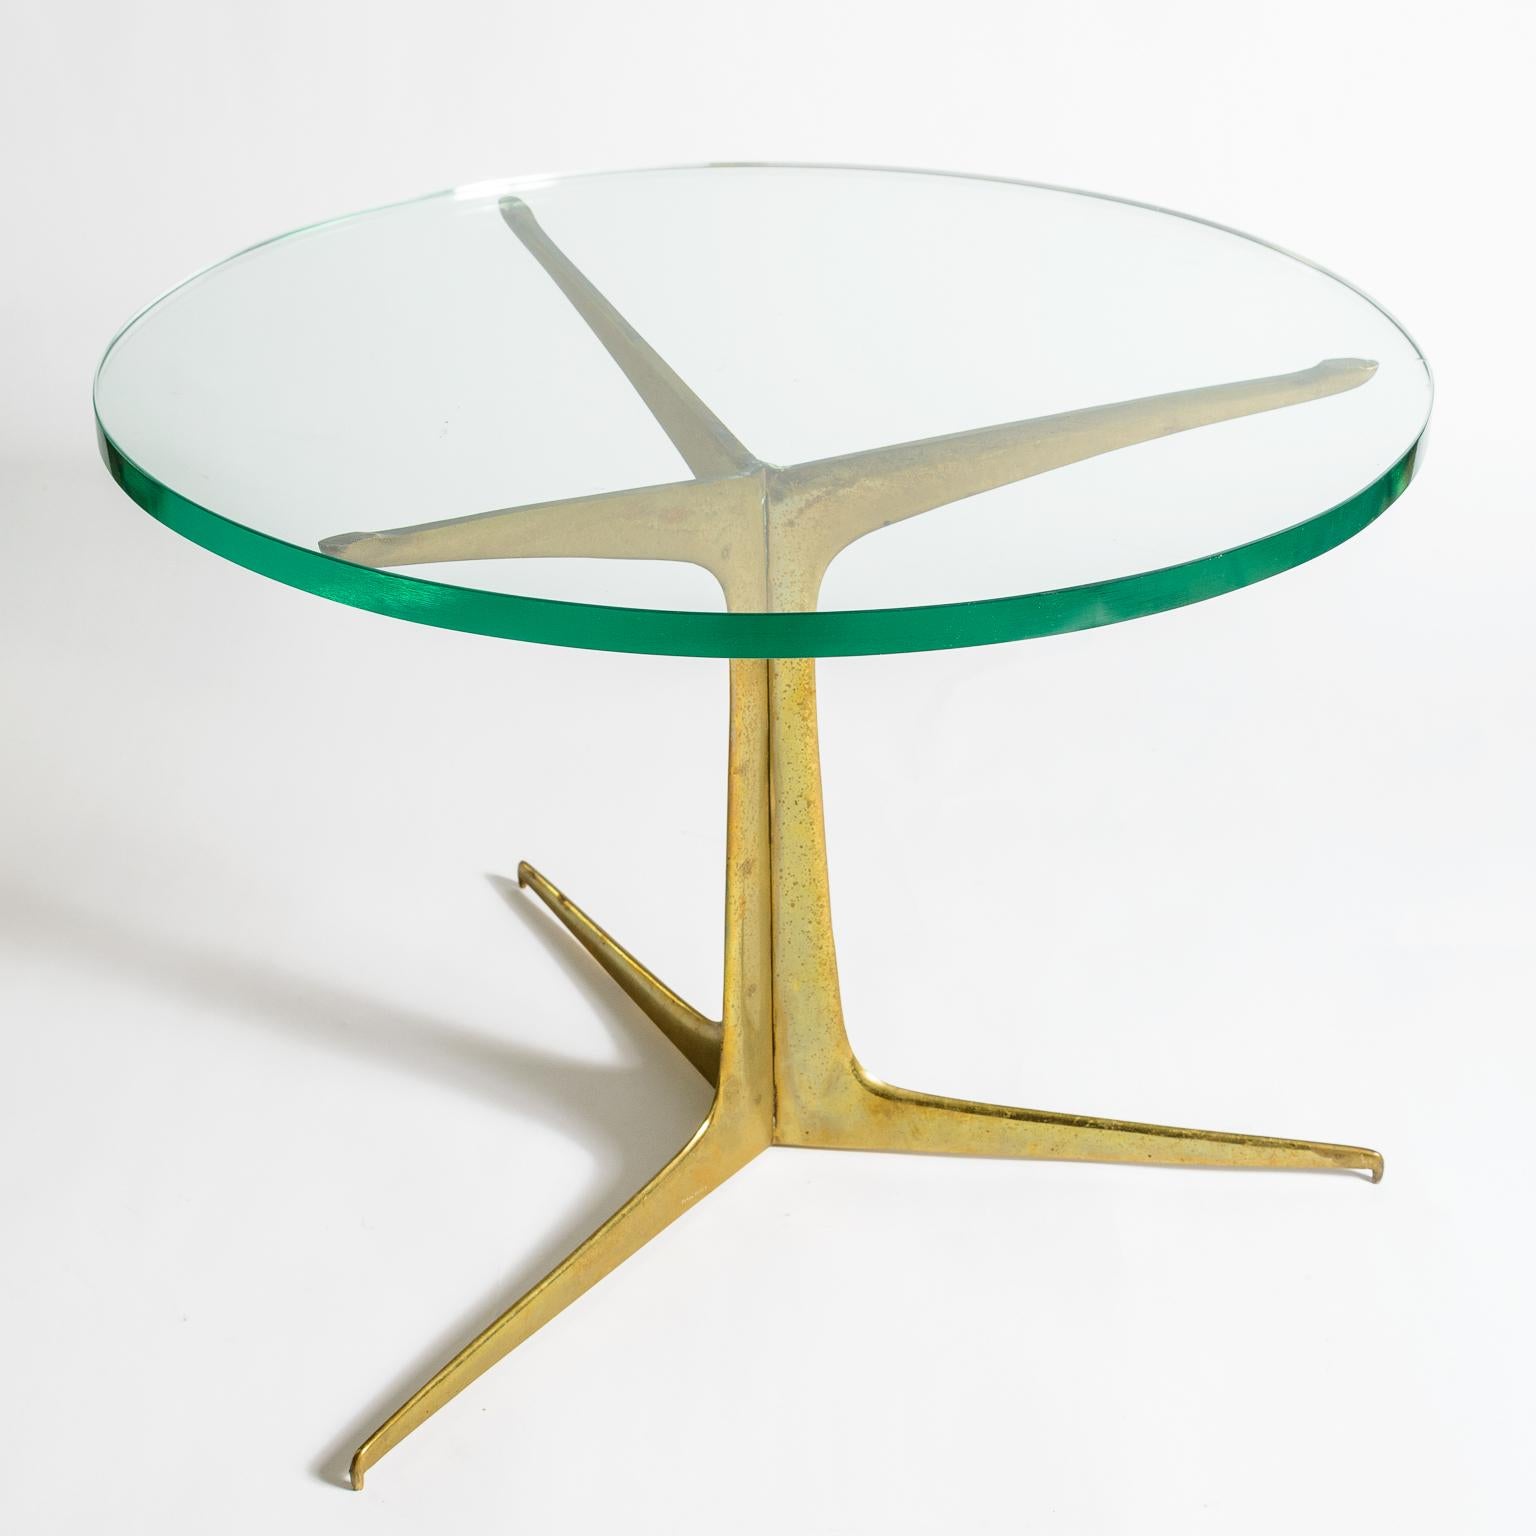 Table d'appoint italienne à trois pieds en laiton
Base en laiton finement détaillée avec sa surface d'origine
